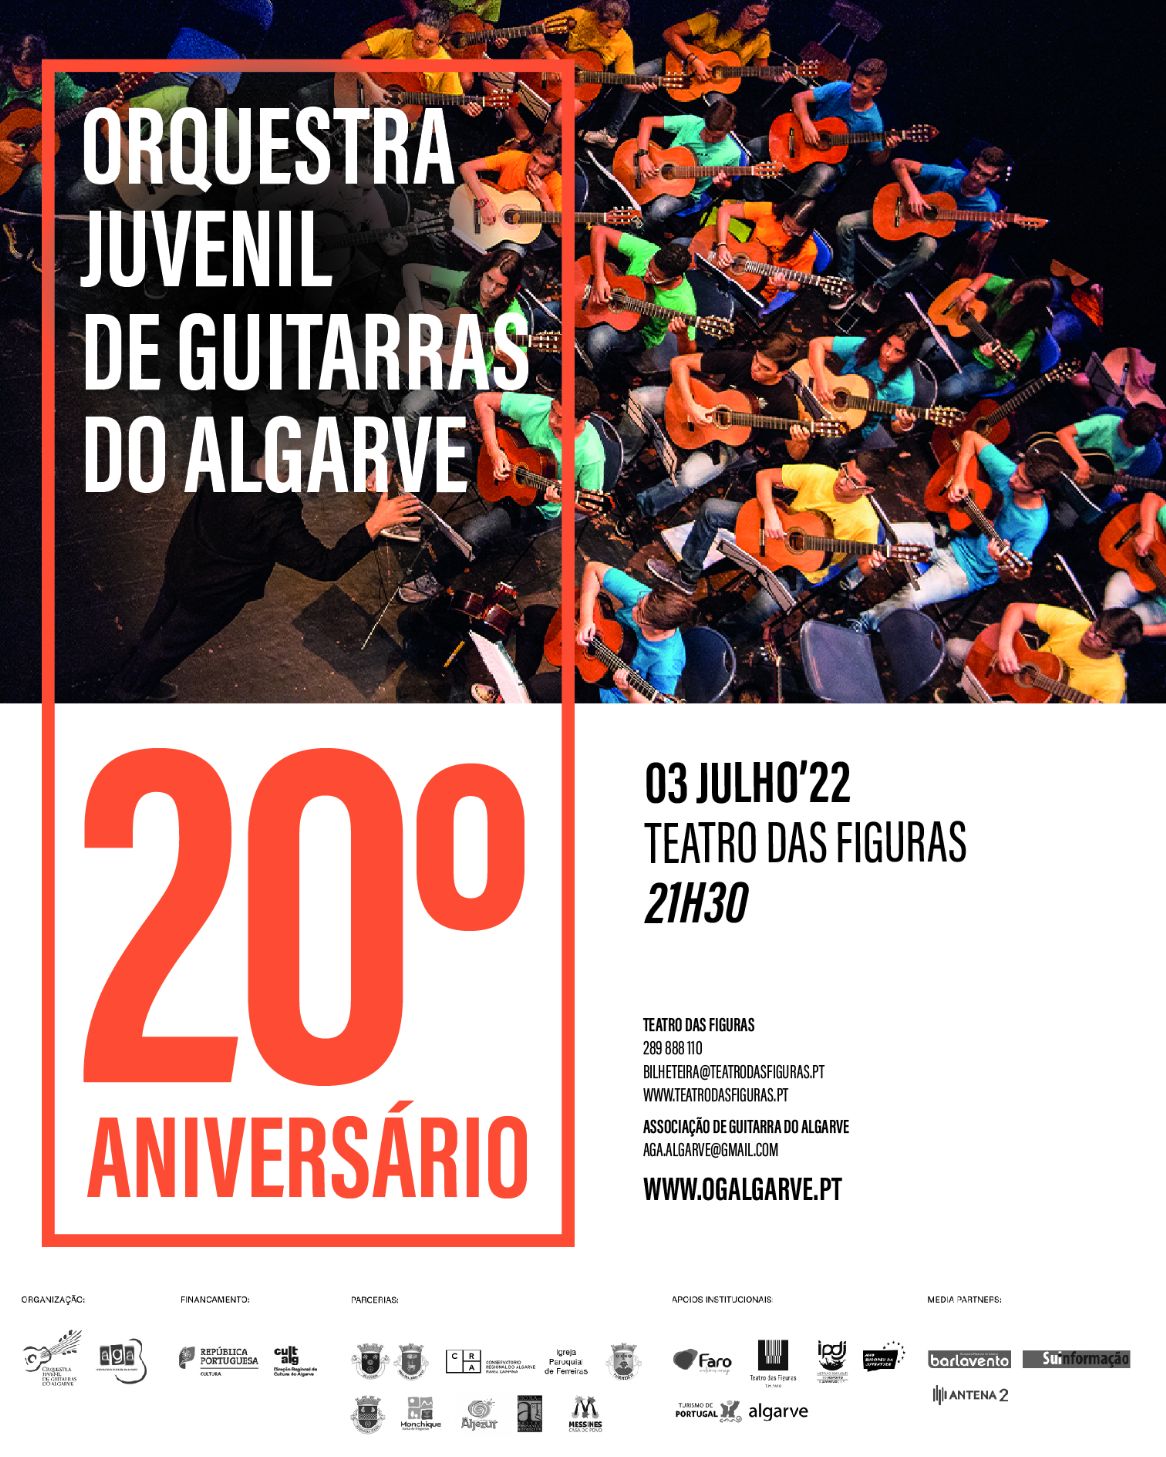 Orquestra Juvenil de Guitarras do Algarve celebra 20º aniversário com estreia mundial de “Viagens” e muitos convidados